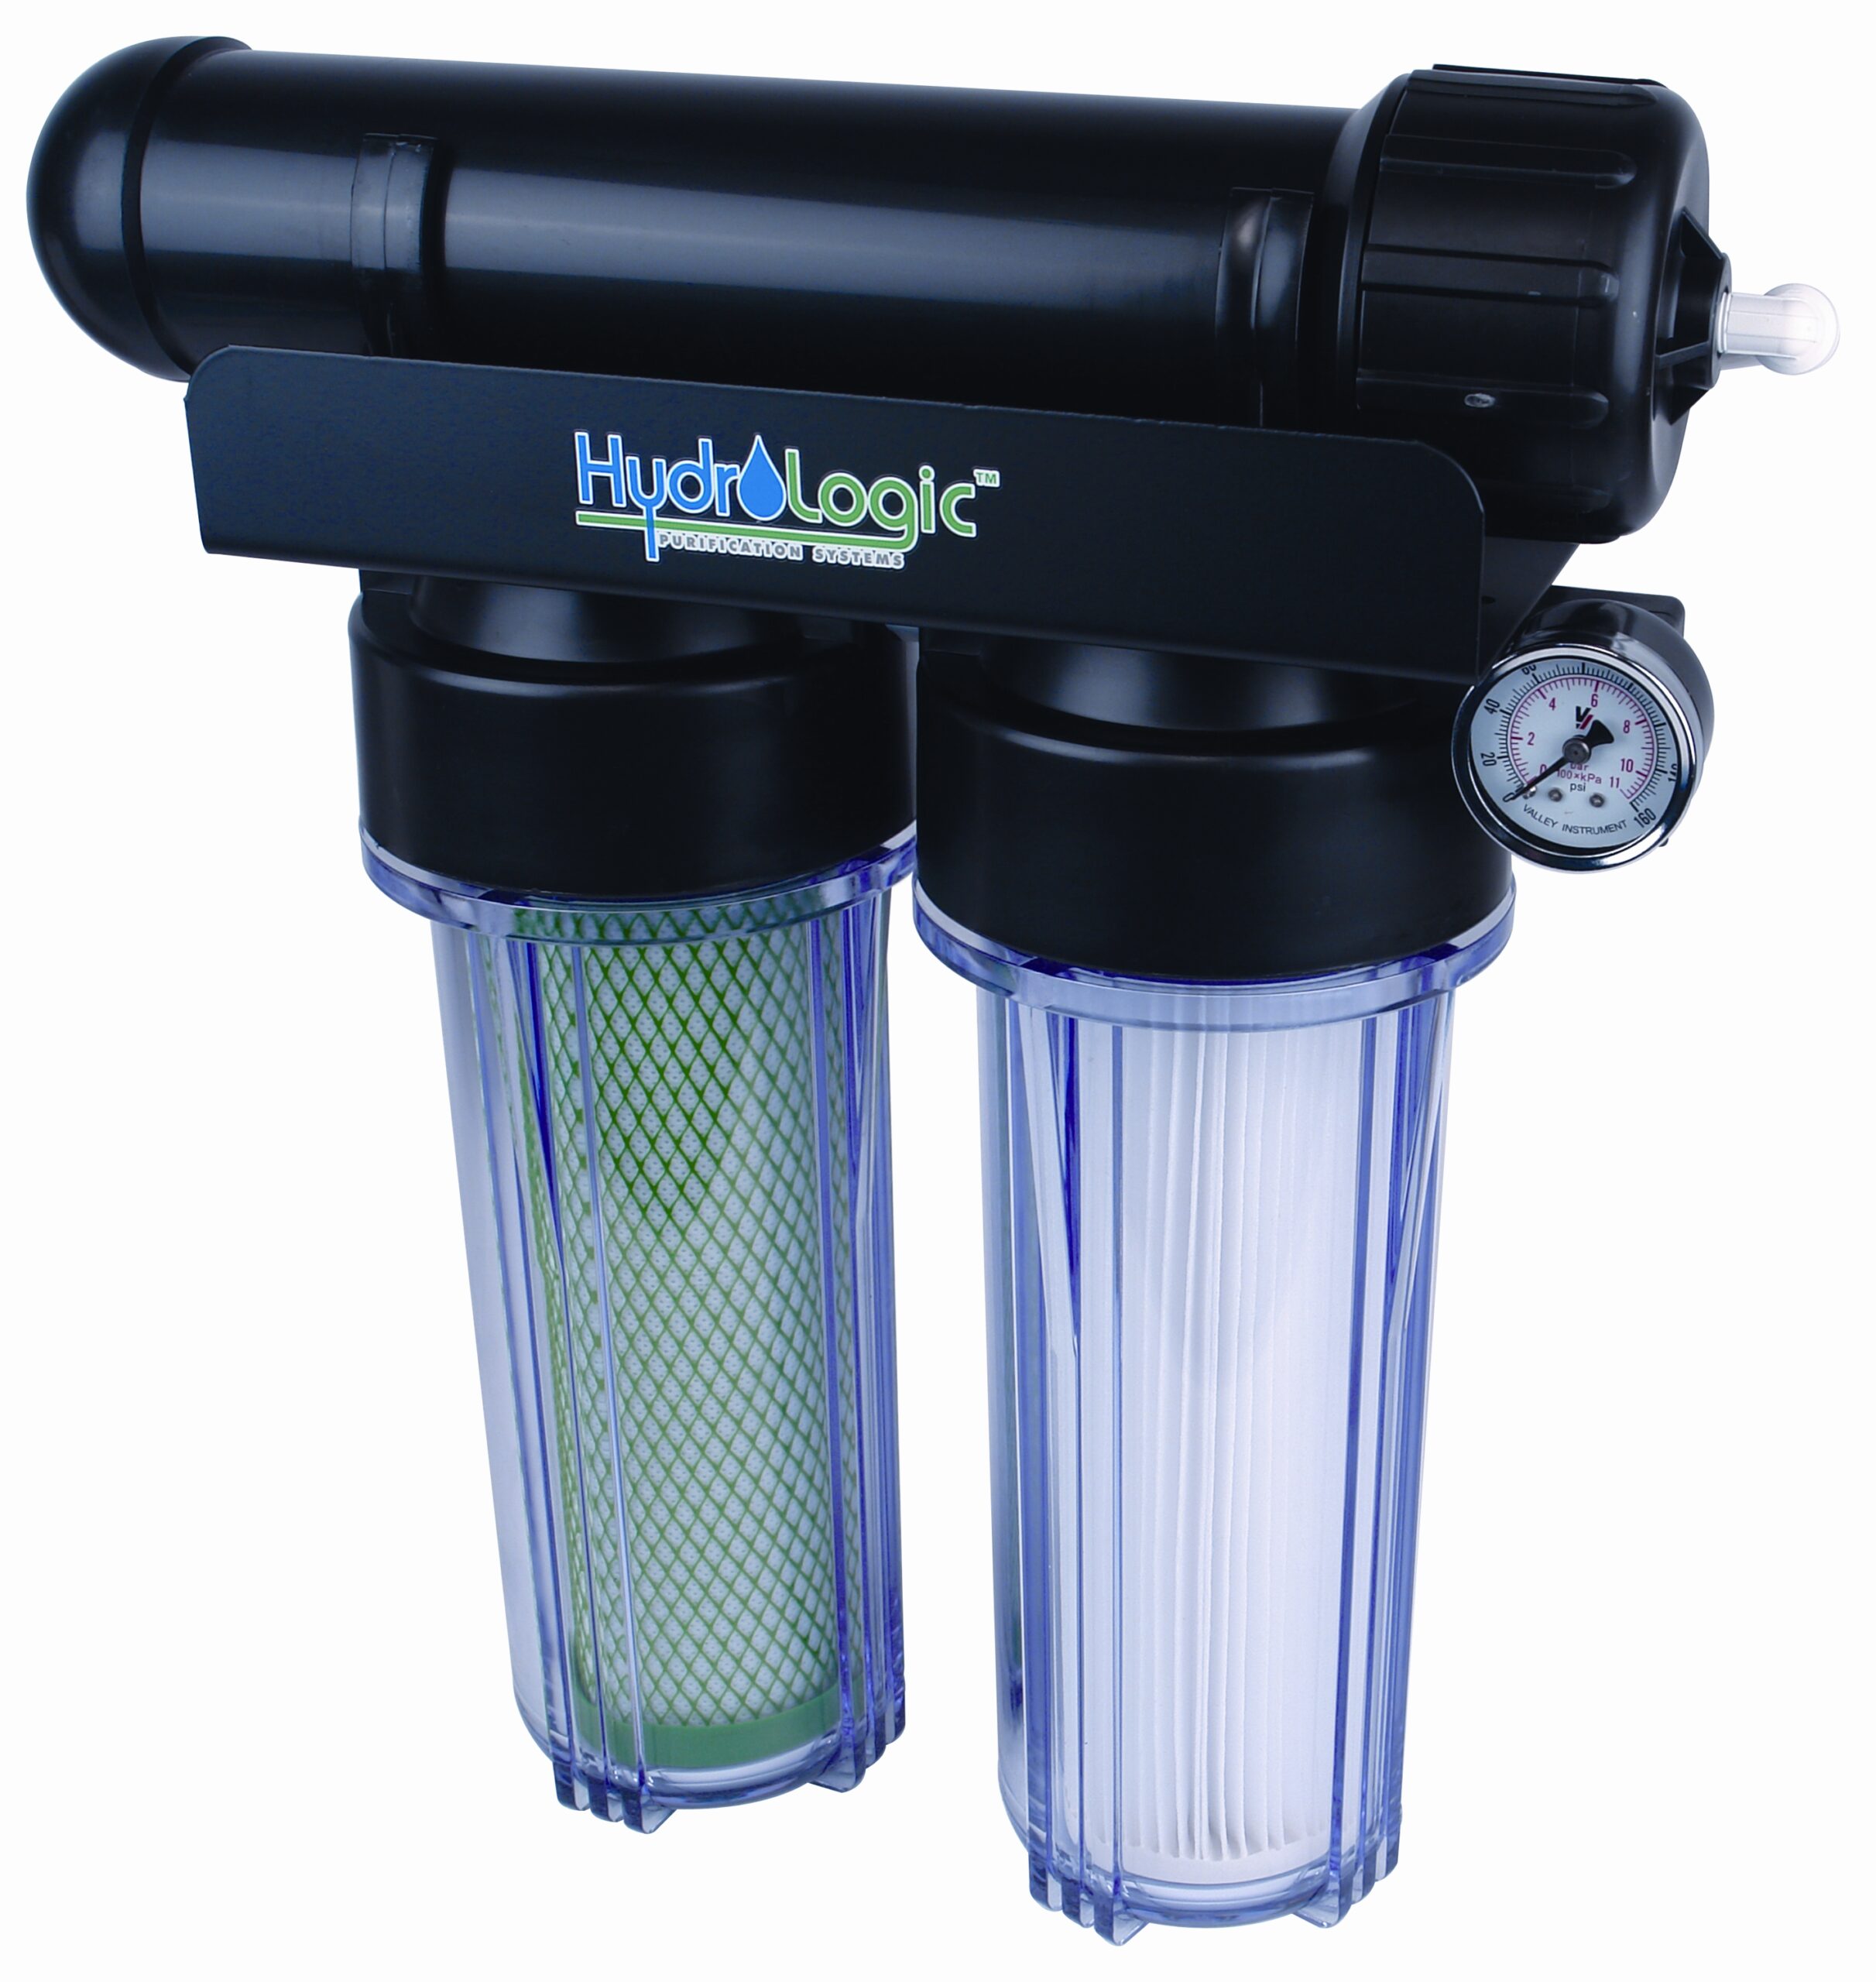 Фильтры для воды com. Фильтр для воды Water Filter. Лоджик фильтр для воды. 100 GPD насос Аквафор. Магистральный фильтр для воды.